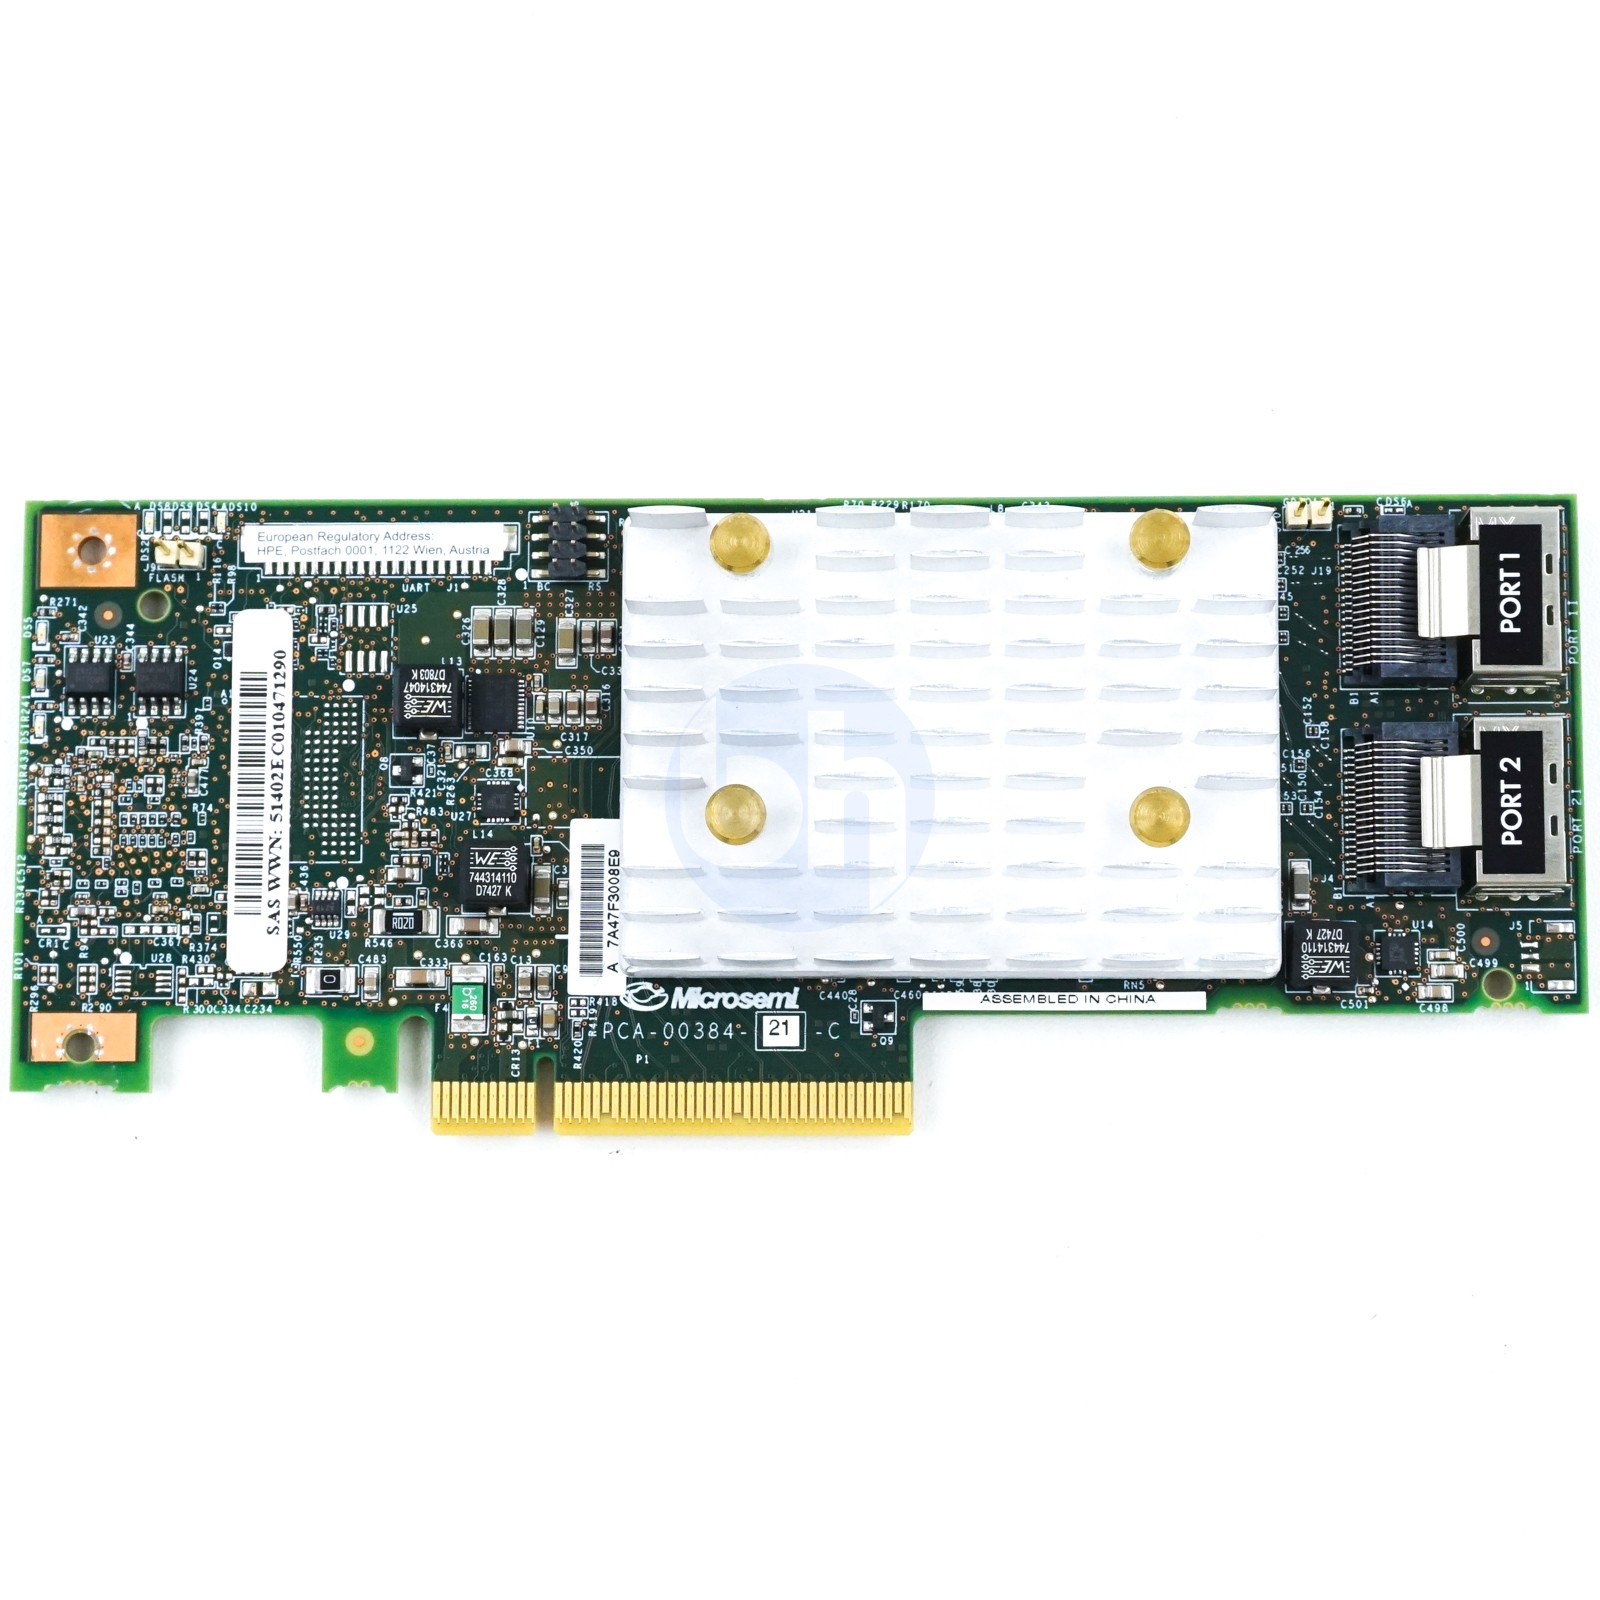 HP Smart Array E208i-p SR - PCIe-x8 12Gbps RAID Controller